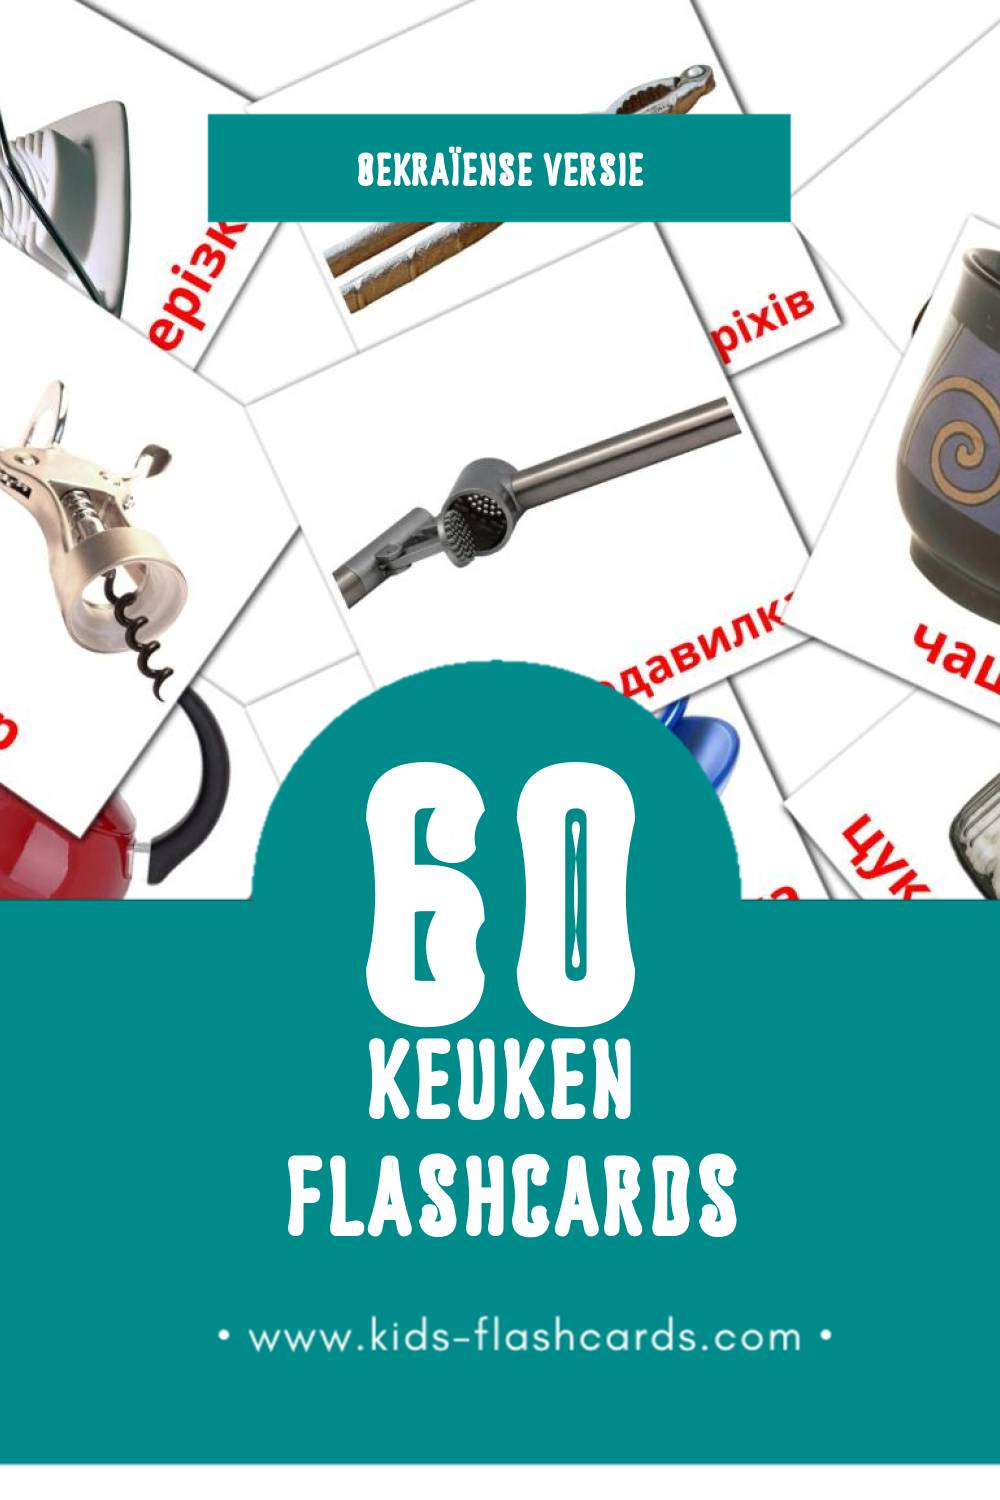 Visuele Кухня Flashcards voor Kleuters (60 kaarten in het Oekraïens)